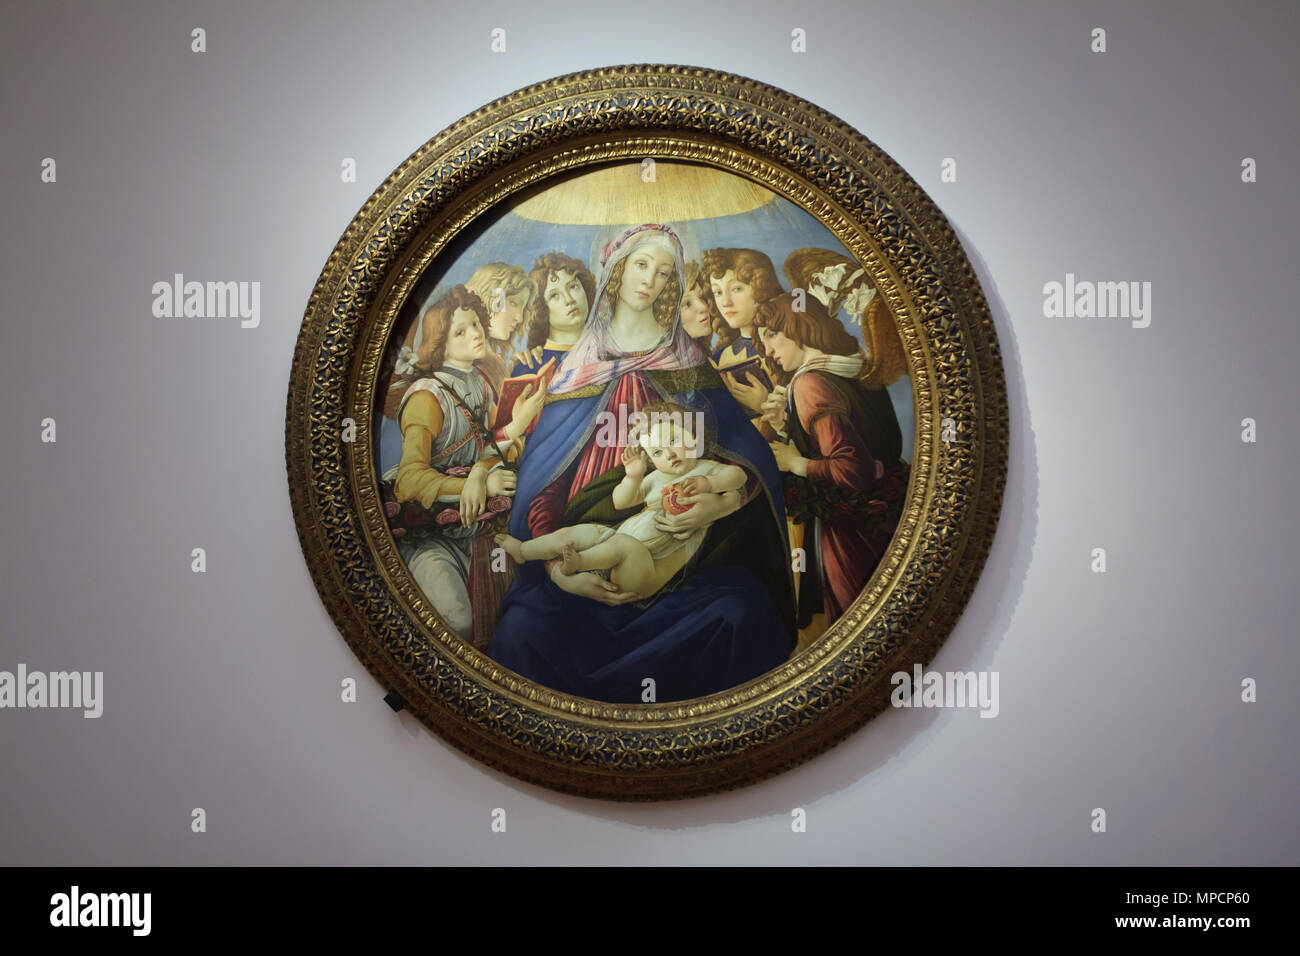 Pittura "Madonna della melagrana' dagli italiani pittore rinascimentale Sandro Botticelli datato circa dal 1487 in mostra nella Galleria degli Uffizi (Galleria degli Uffizi di Firenze, Toscana, Italia. Foto Stock